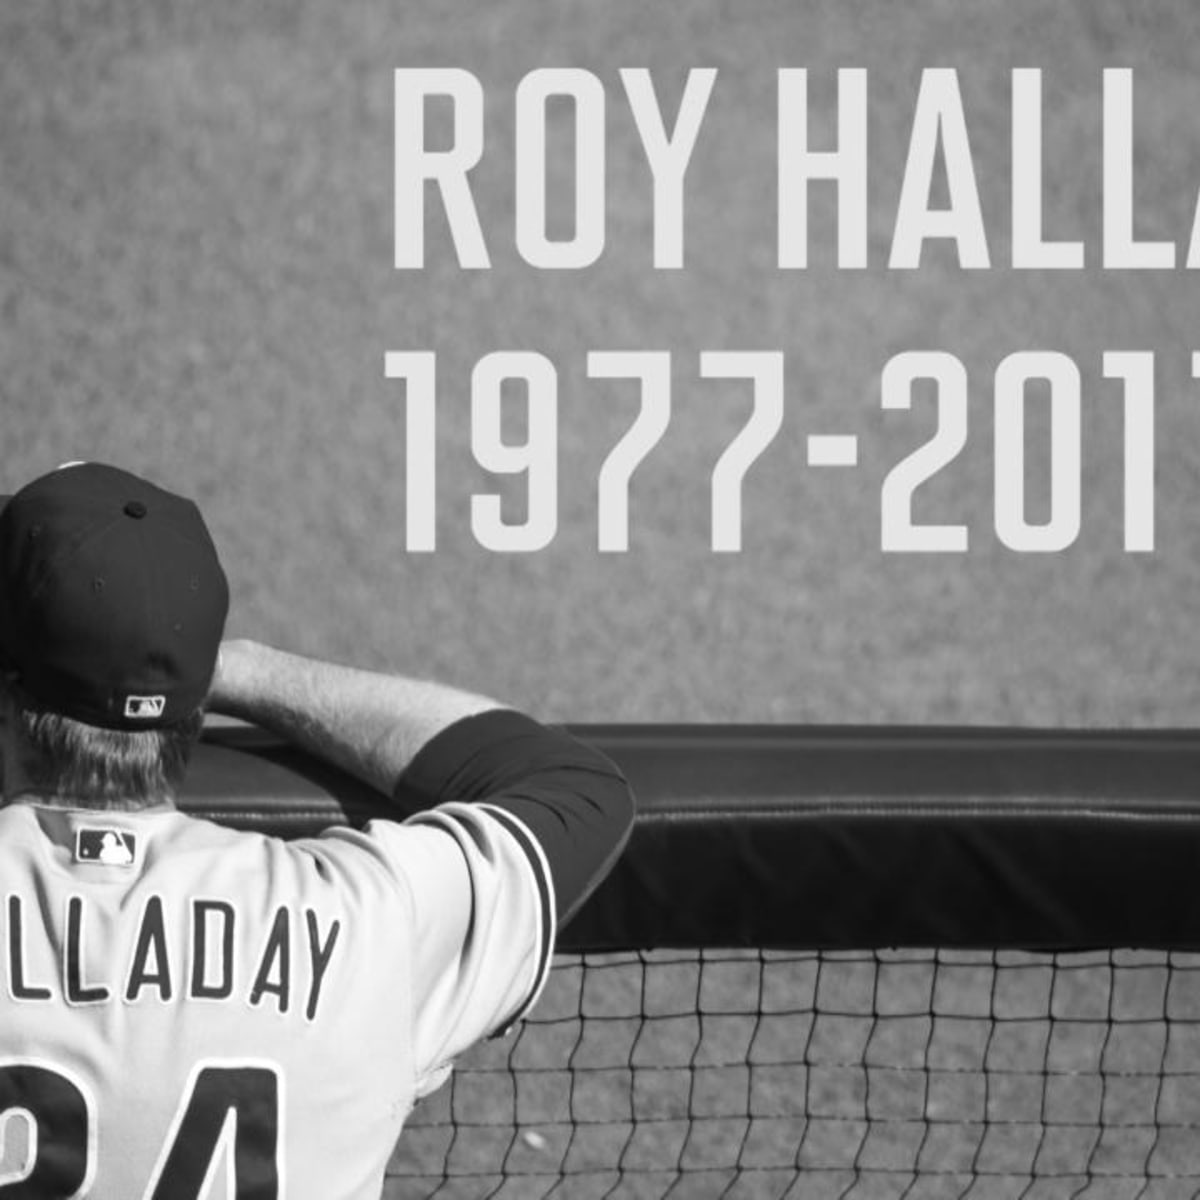 Ex-MLB pitcher Halladay dies in Fla. plane crash